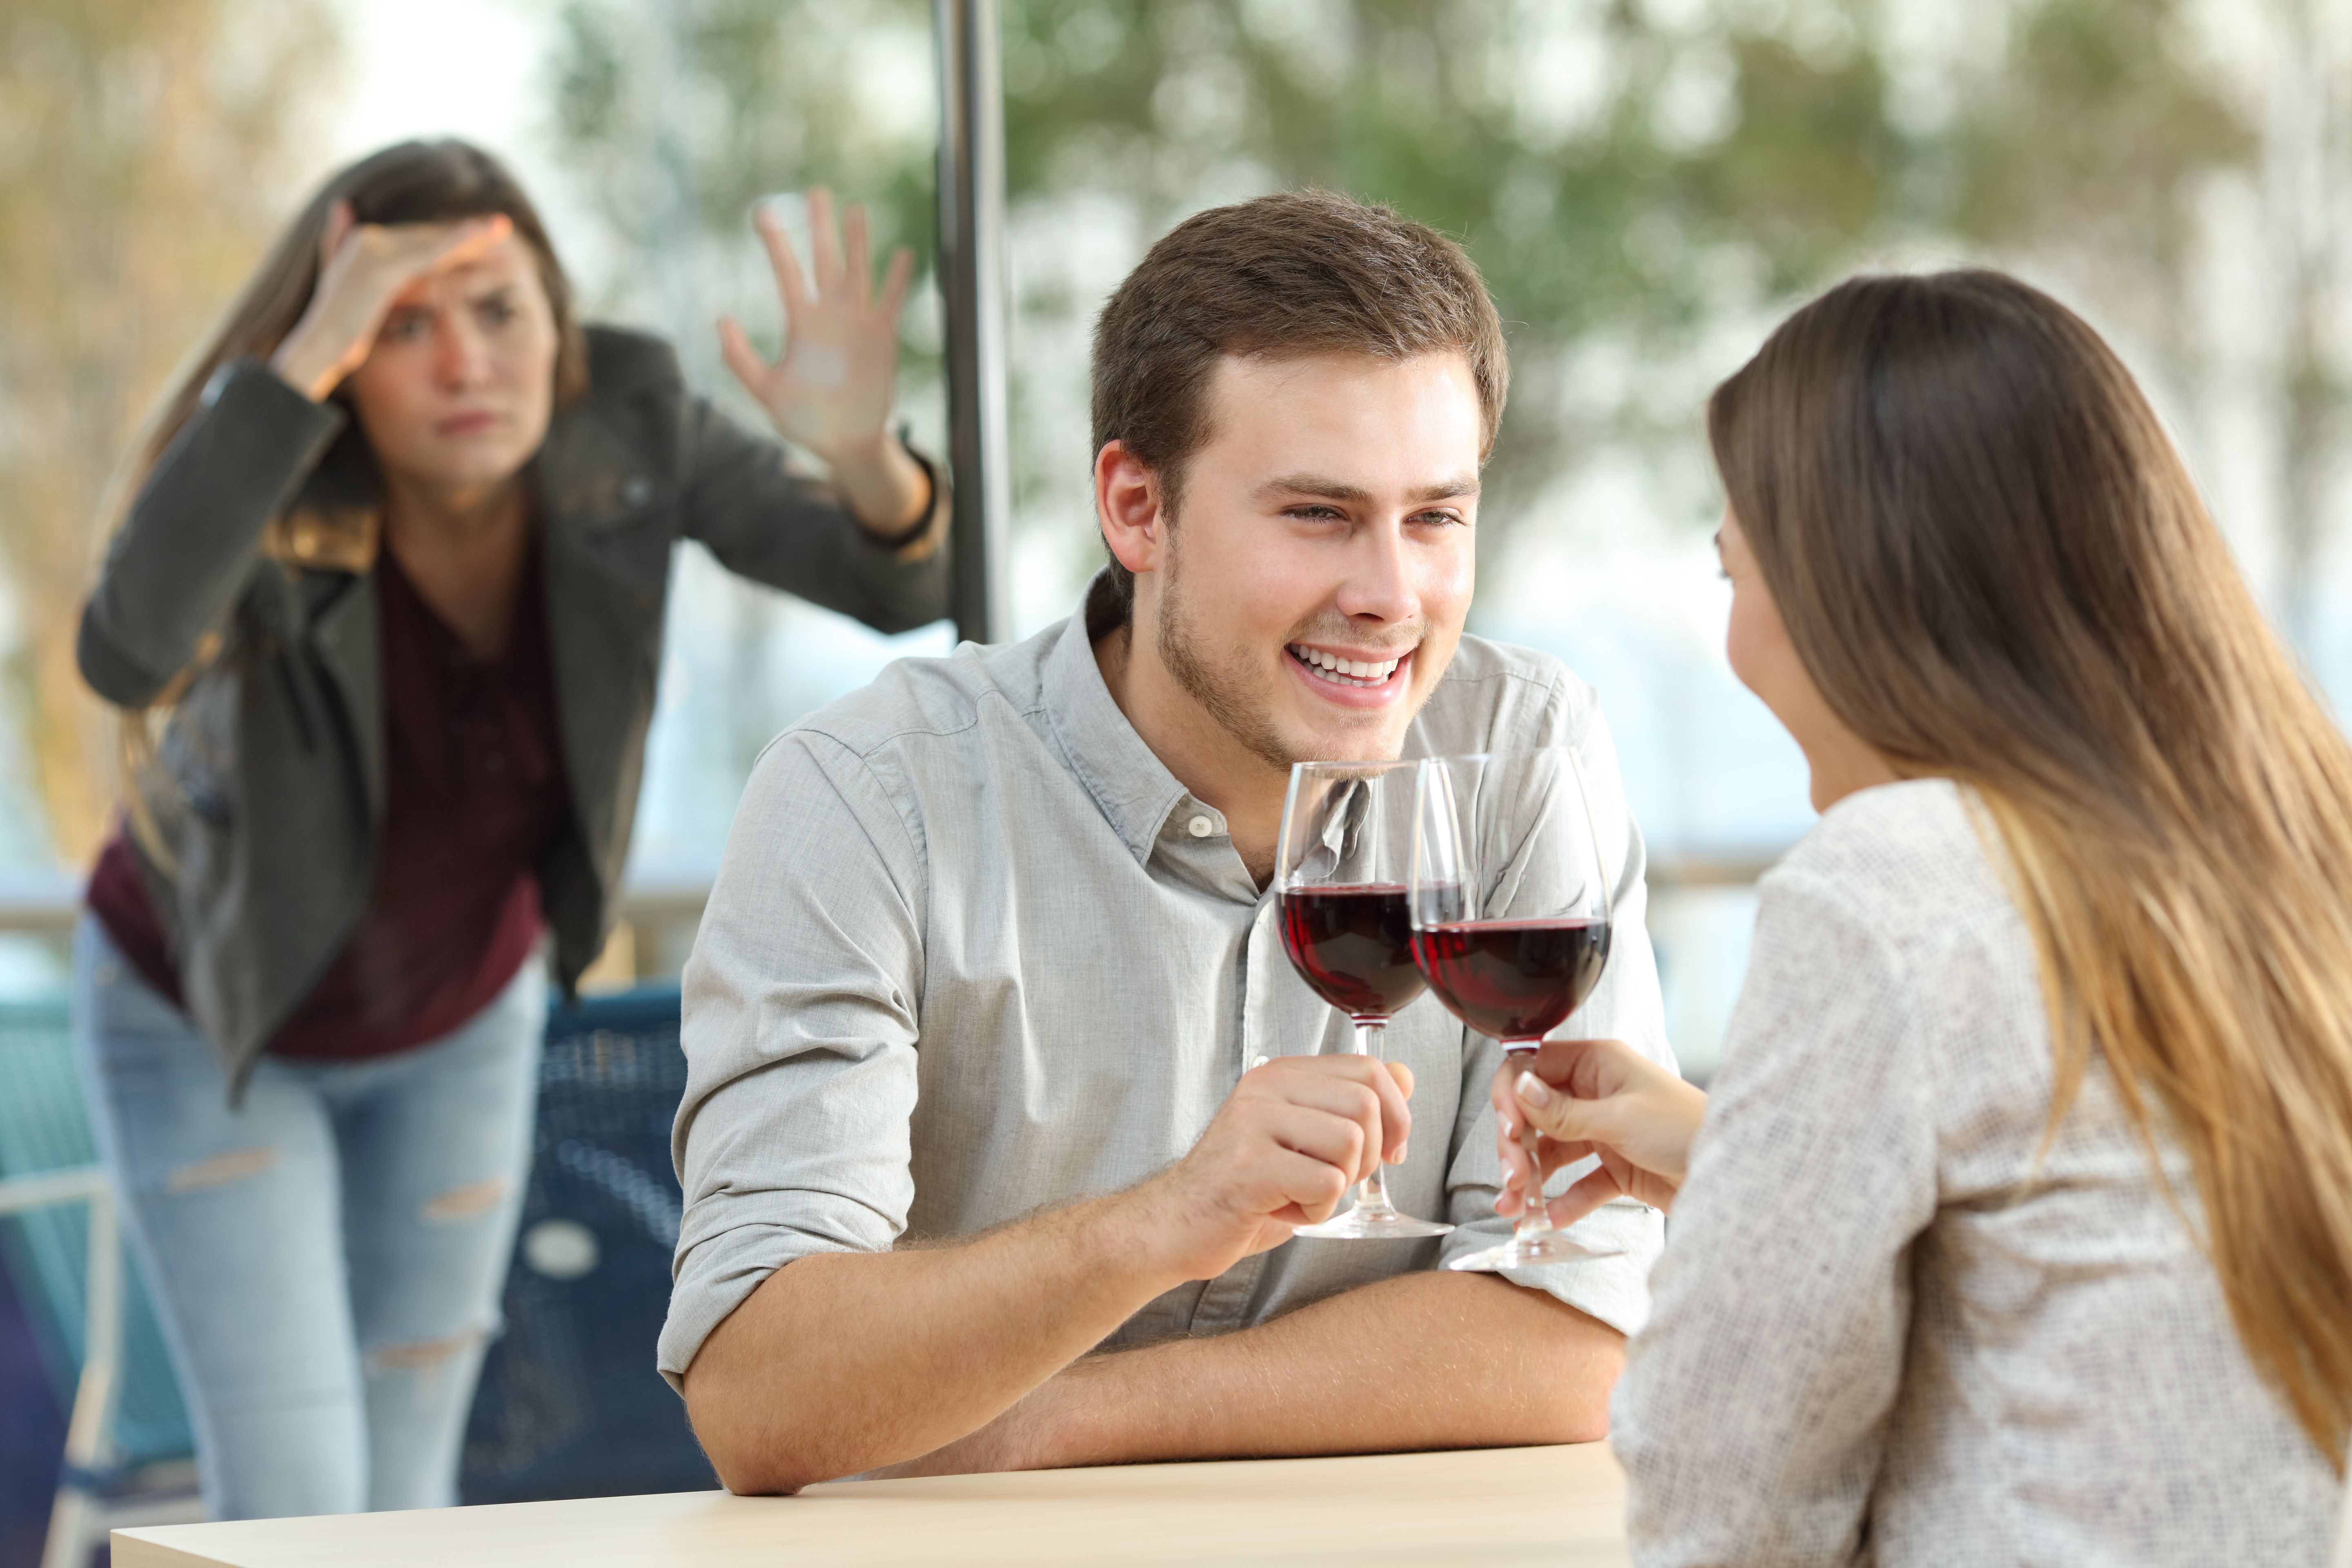 Eine Frau fand ihren Partner beim Fremdgehen in einem Restaurant. | Quelle: Shutterstock